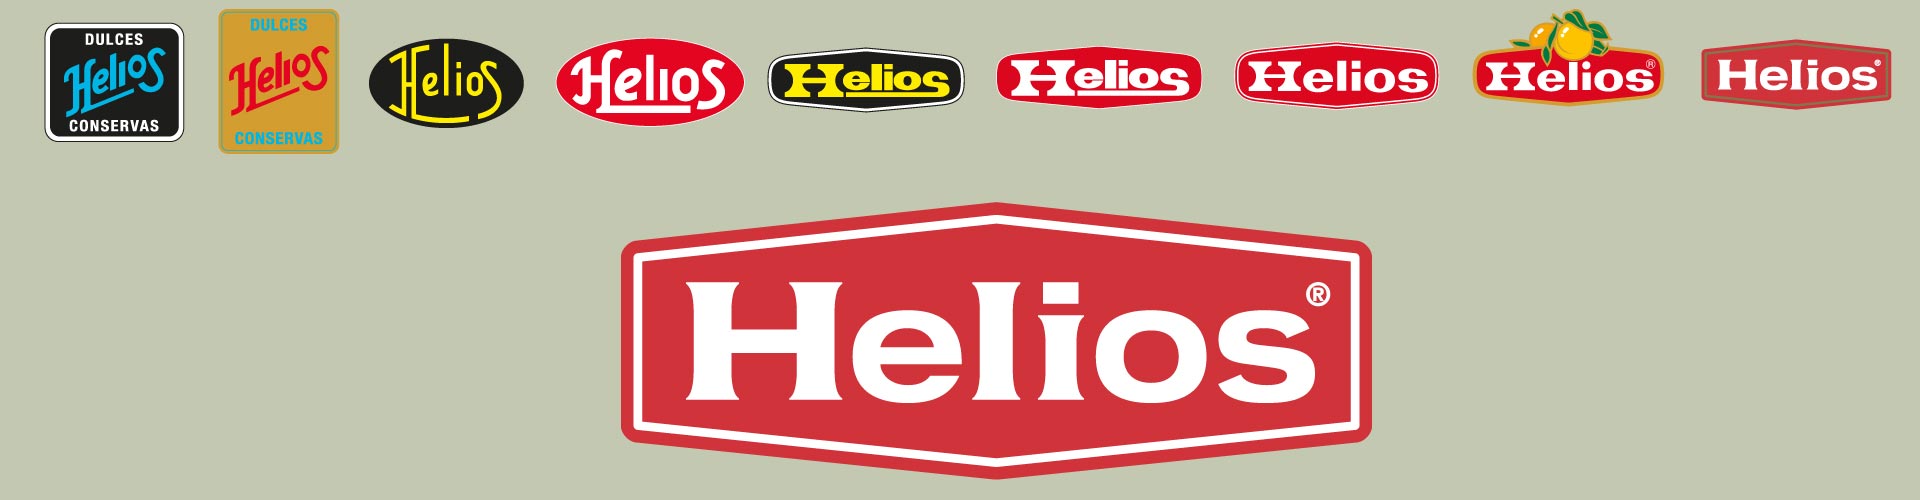 historico-logos-helios-valladolid